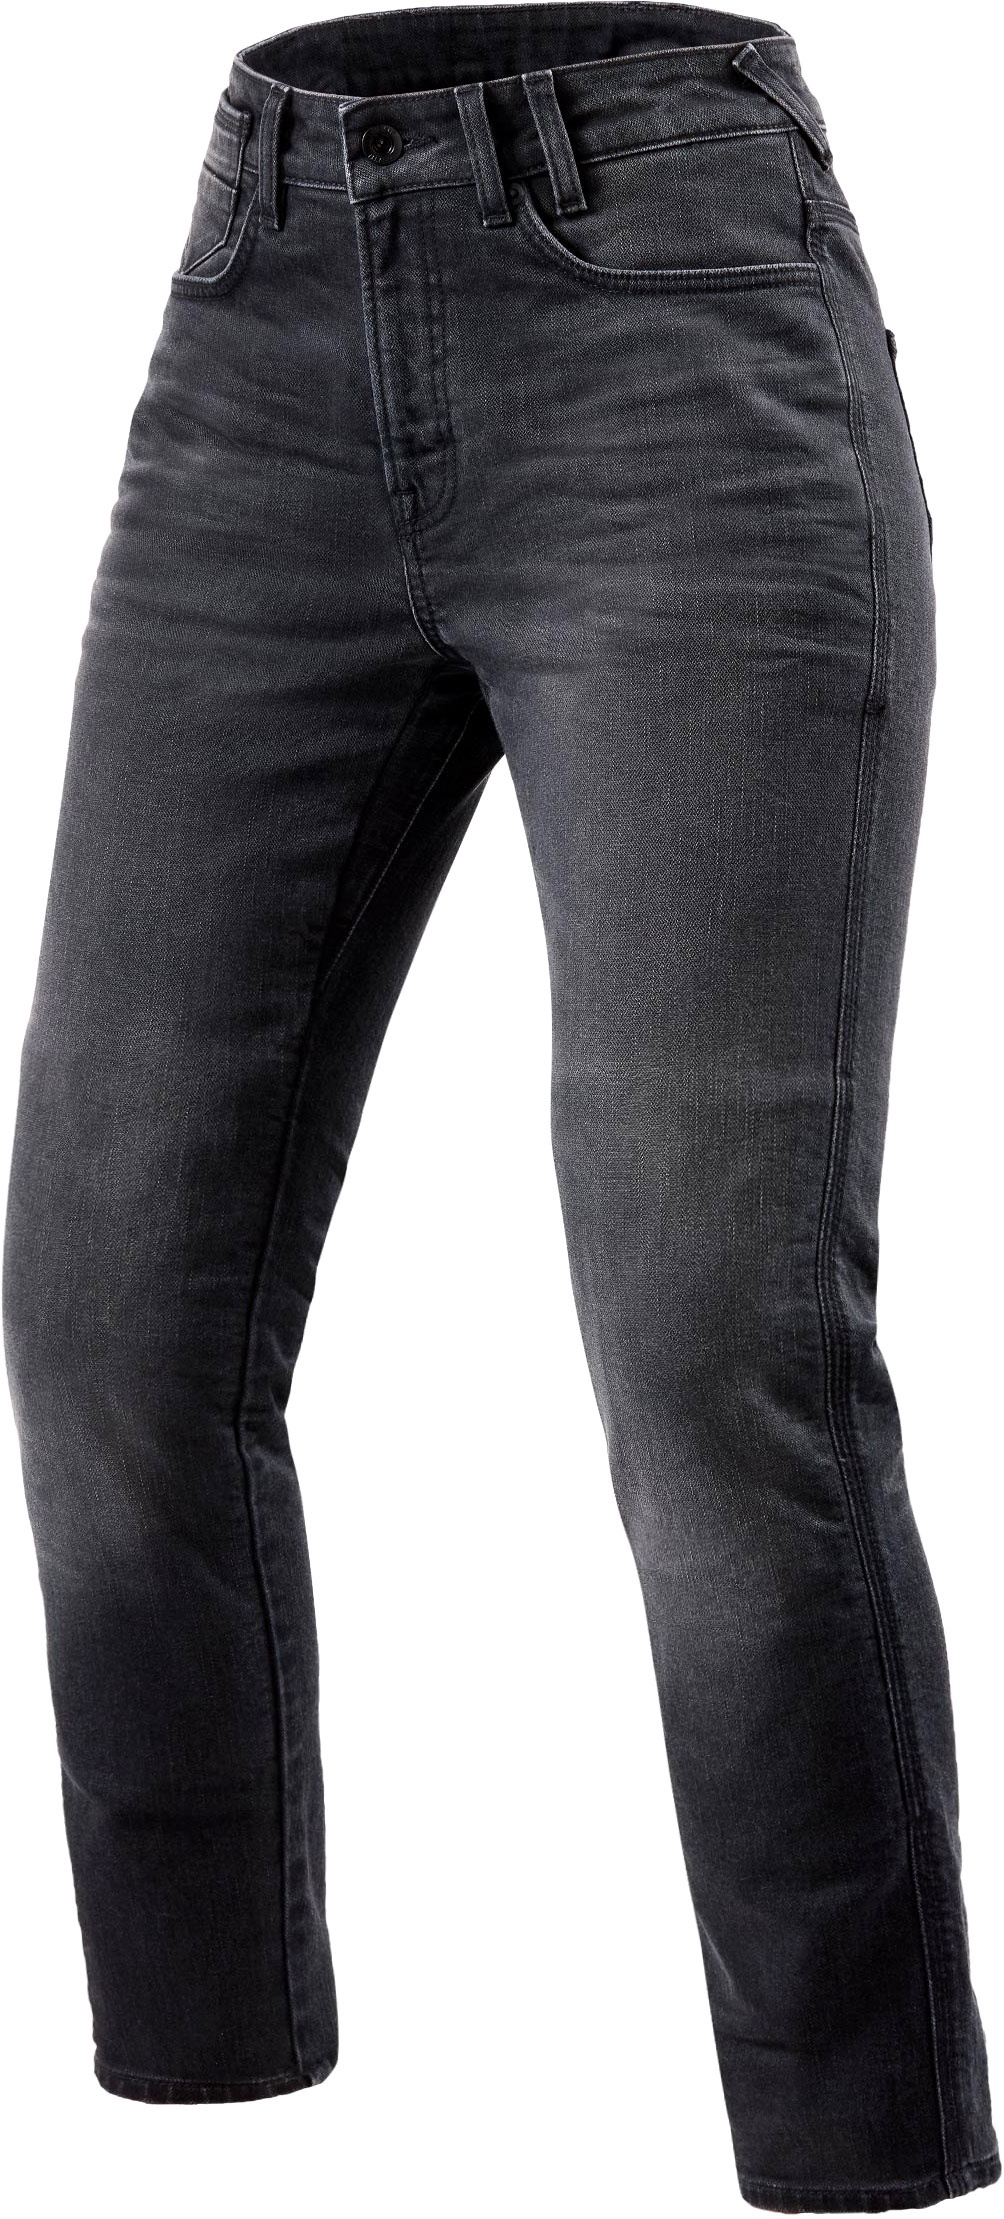 Revit Victoria 2, jeans femmes - Gris - W26/L32